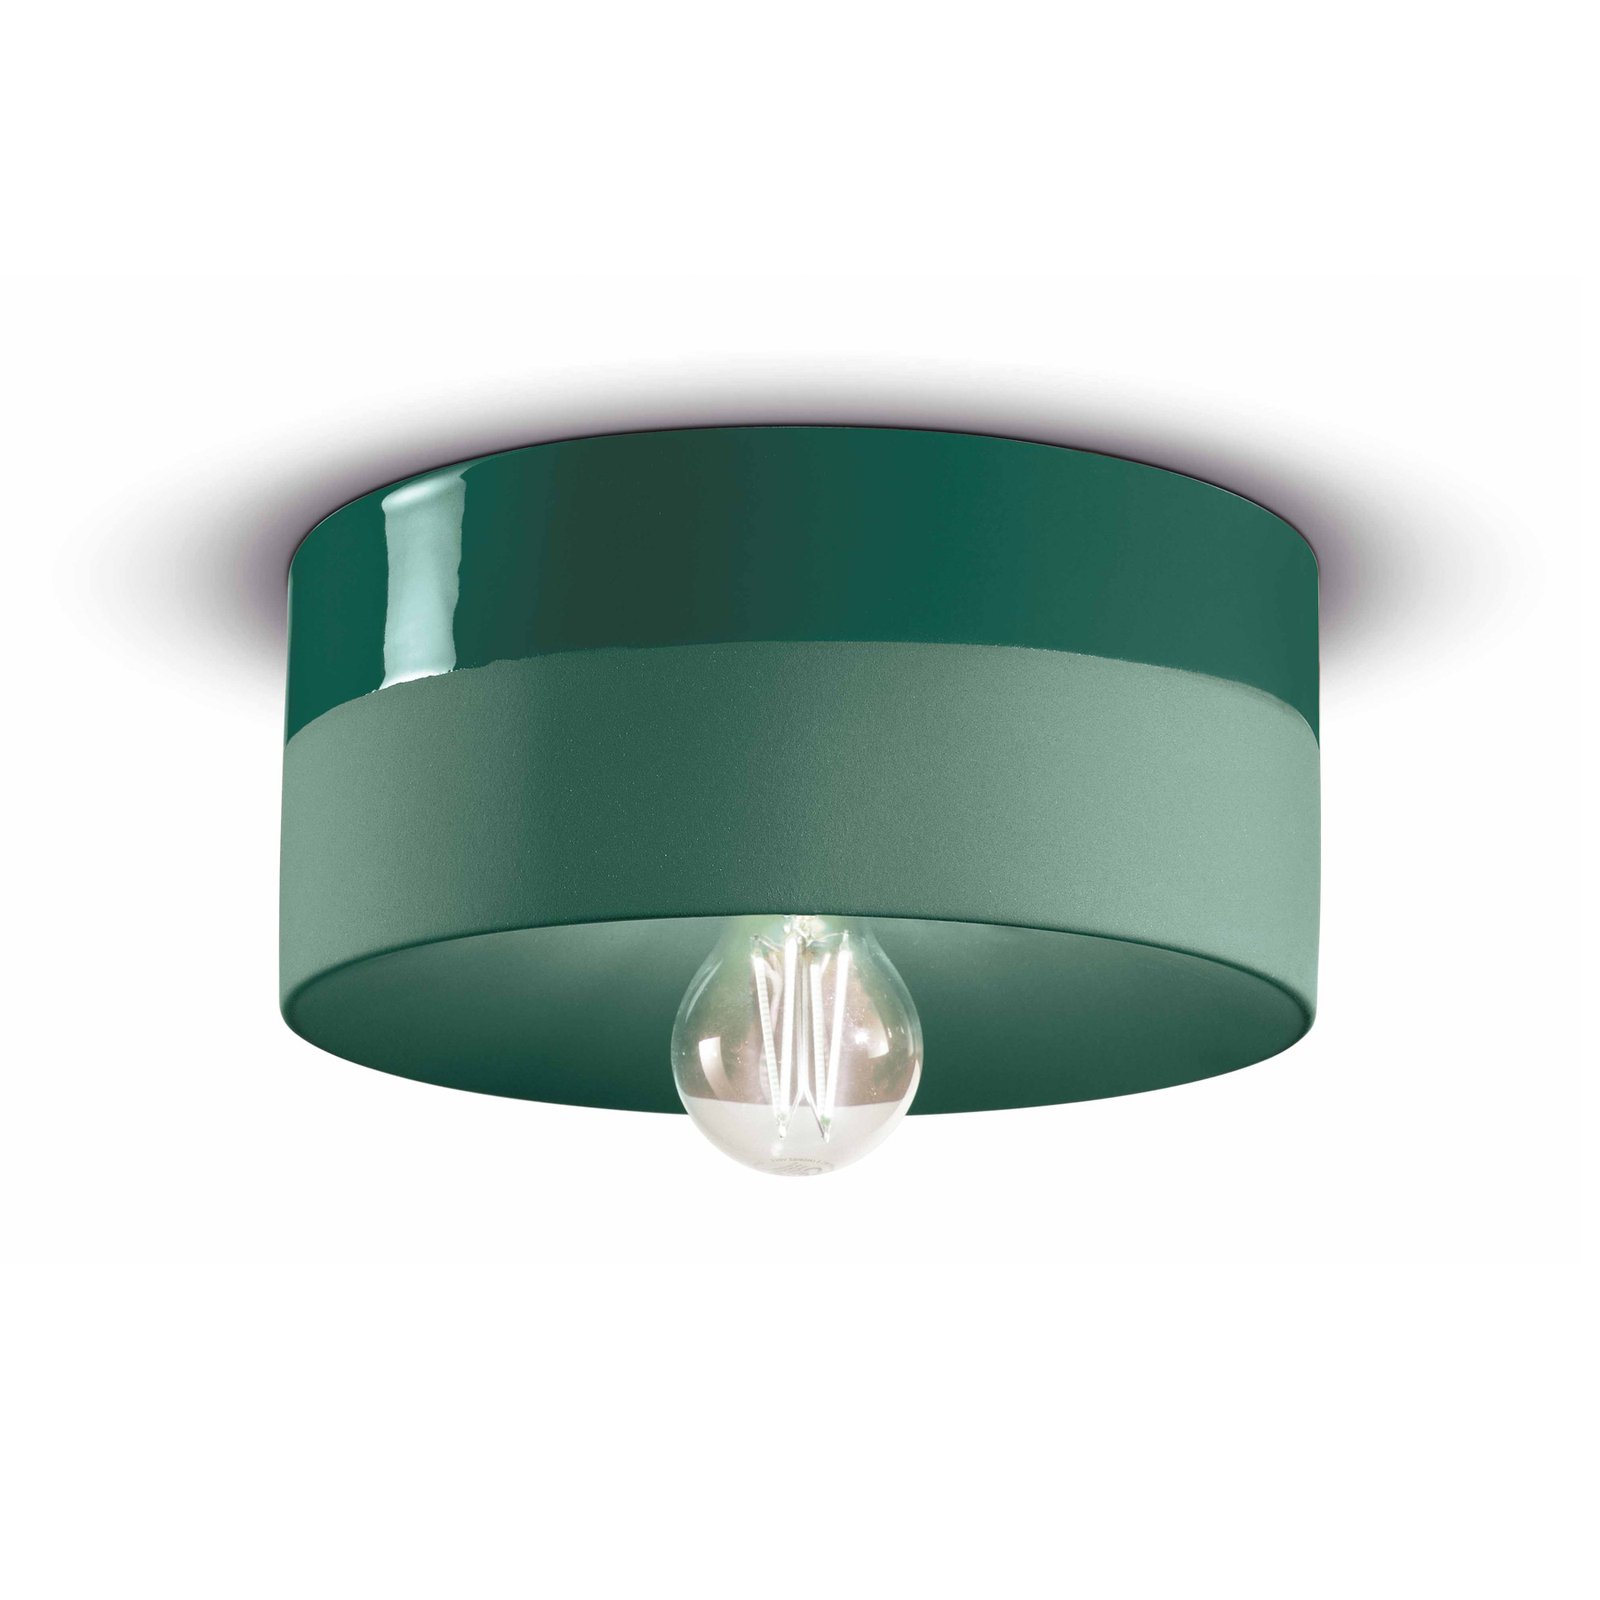 Lampa sufitowa PI ceramiczna błyszcząca/matowa Ø 25 cm zielona